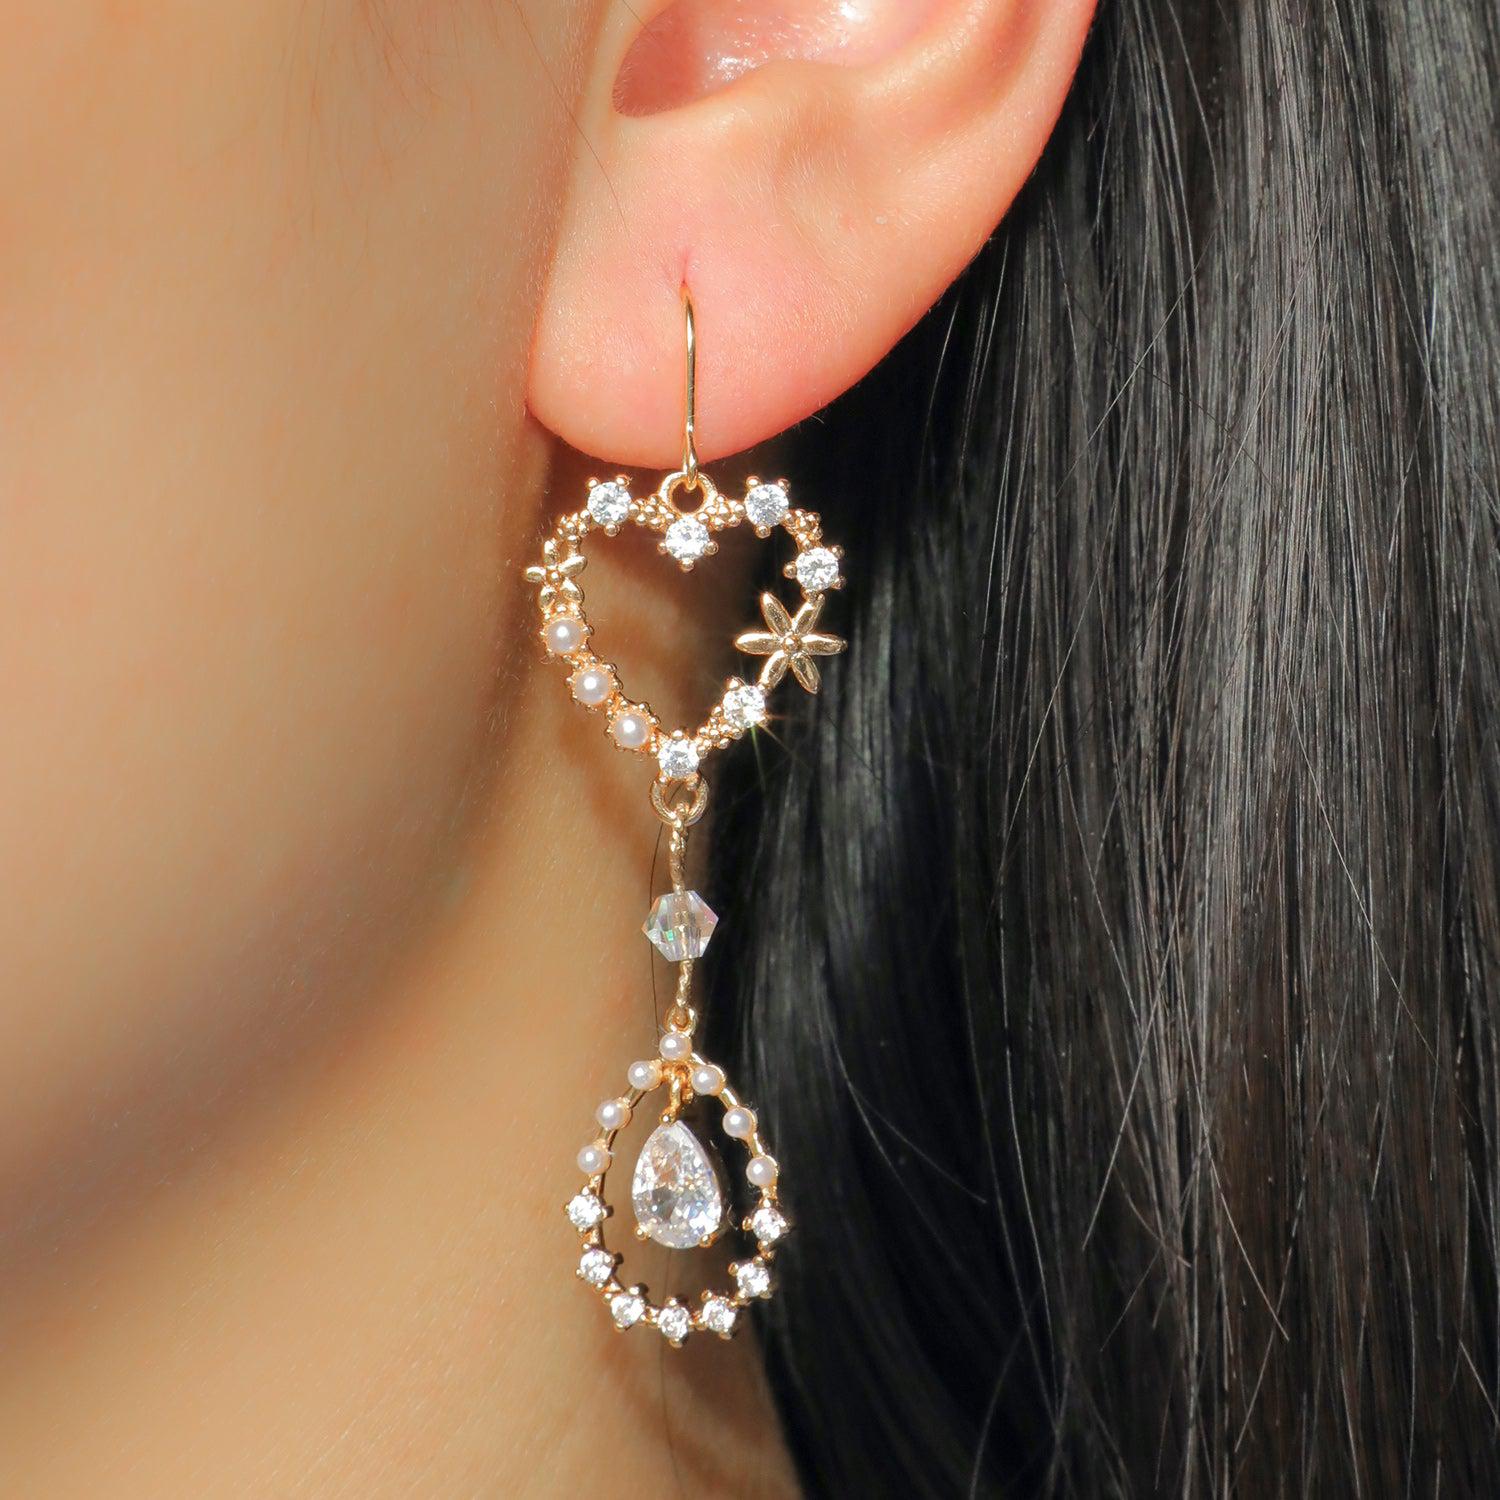 Blooming Heart Earrings